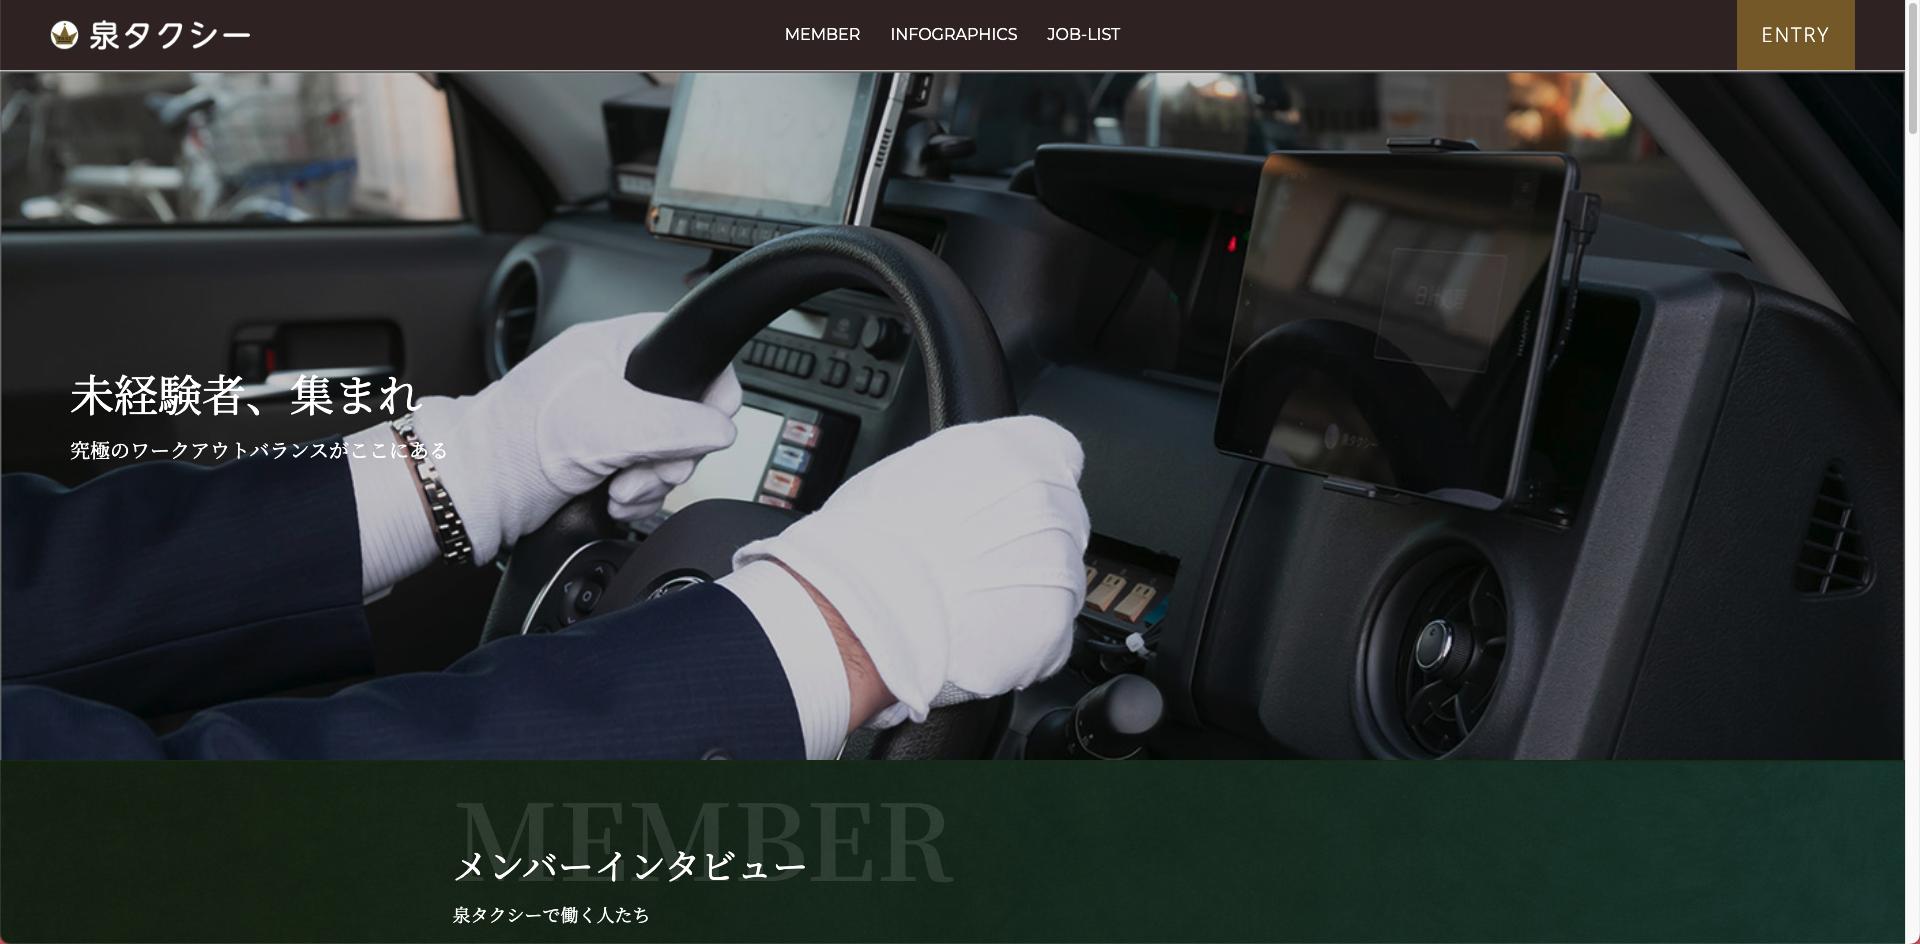 泉タクシー株式会社